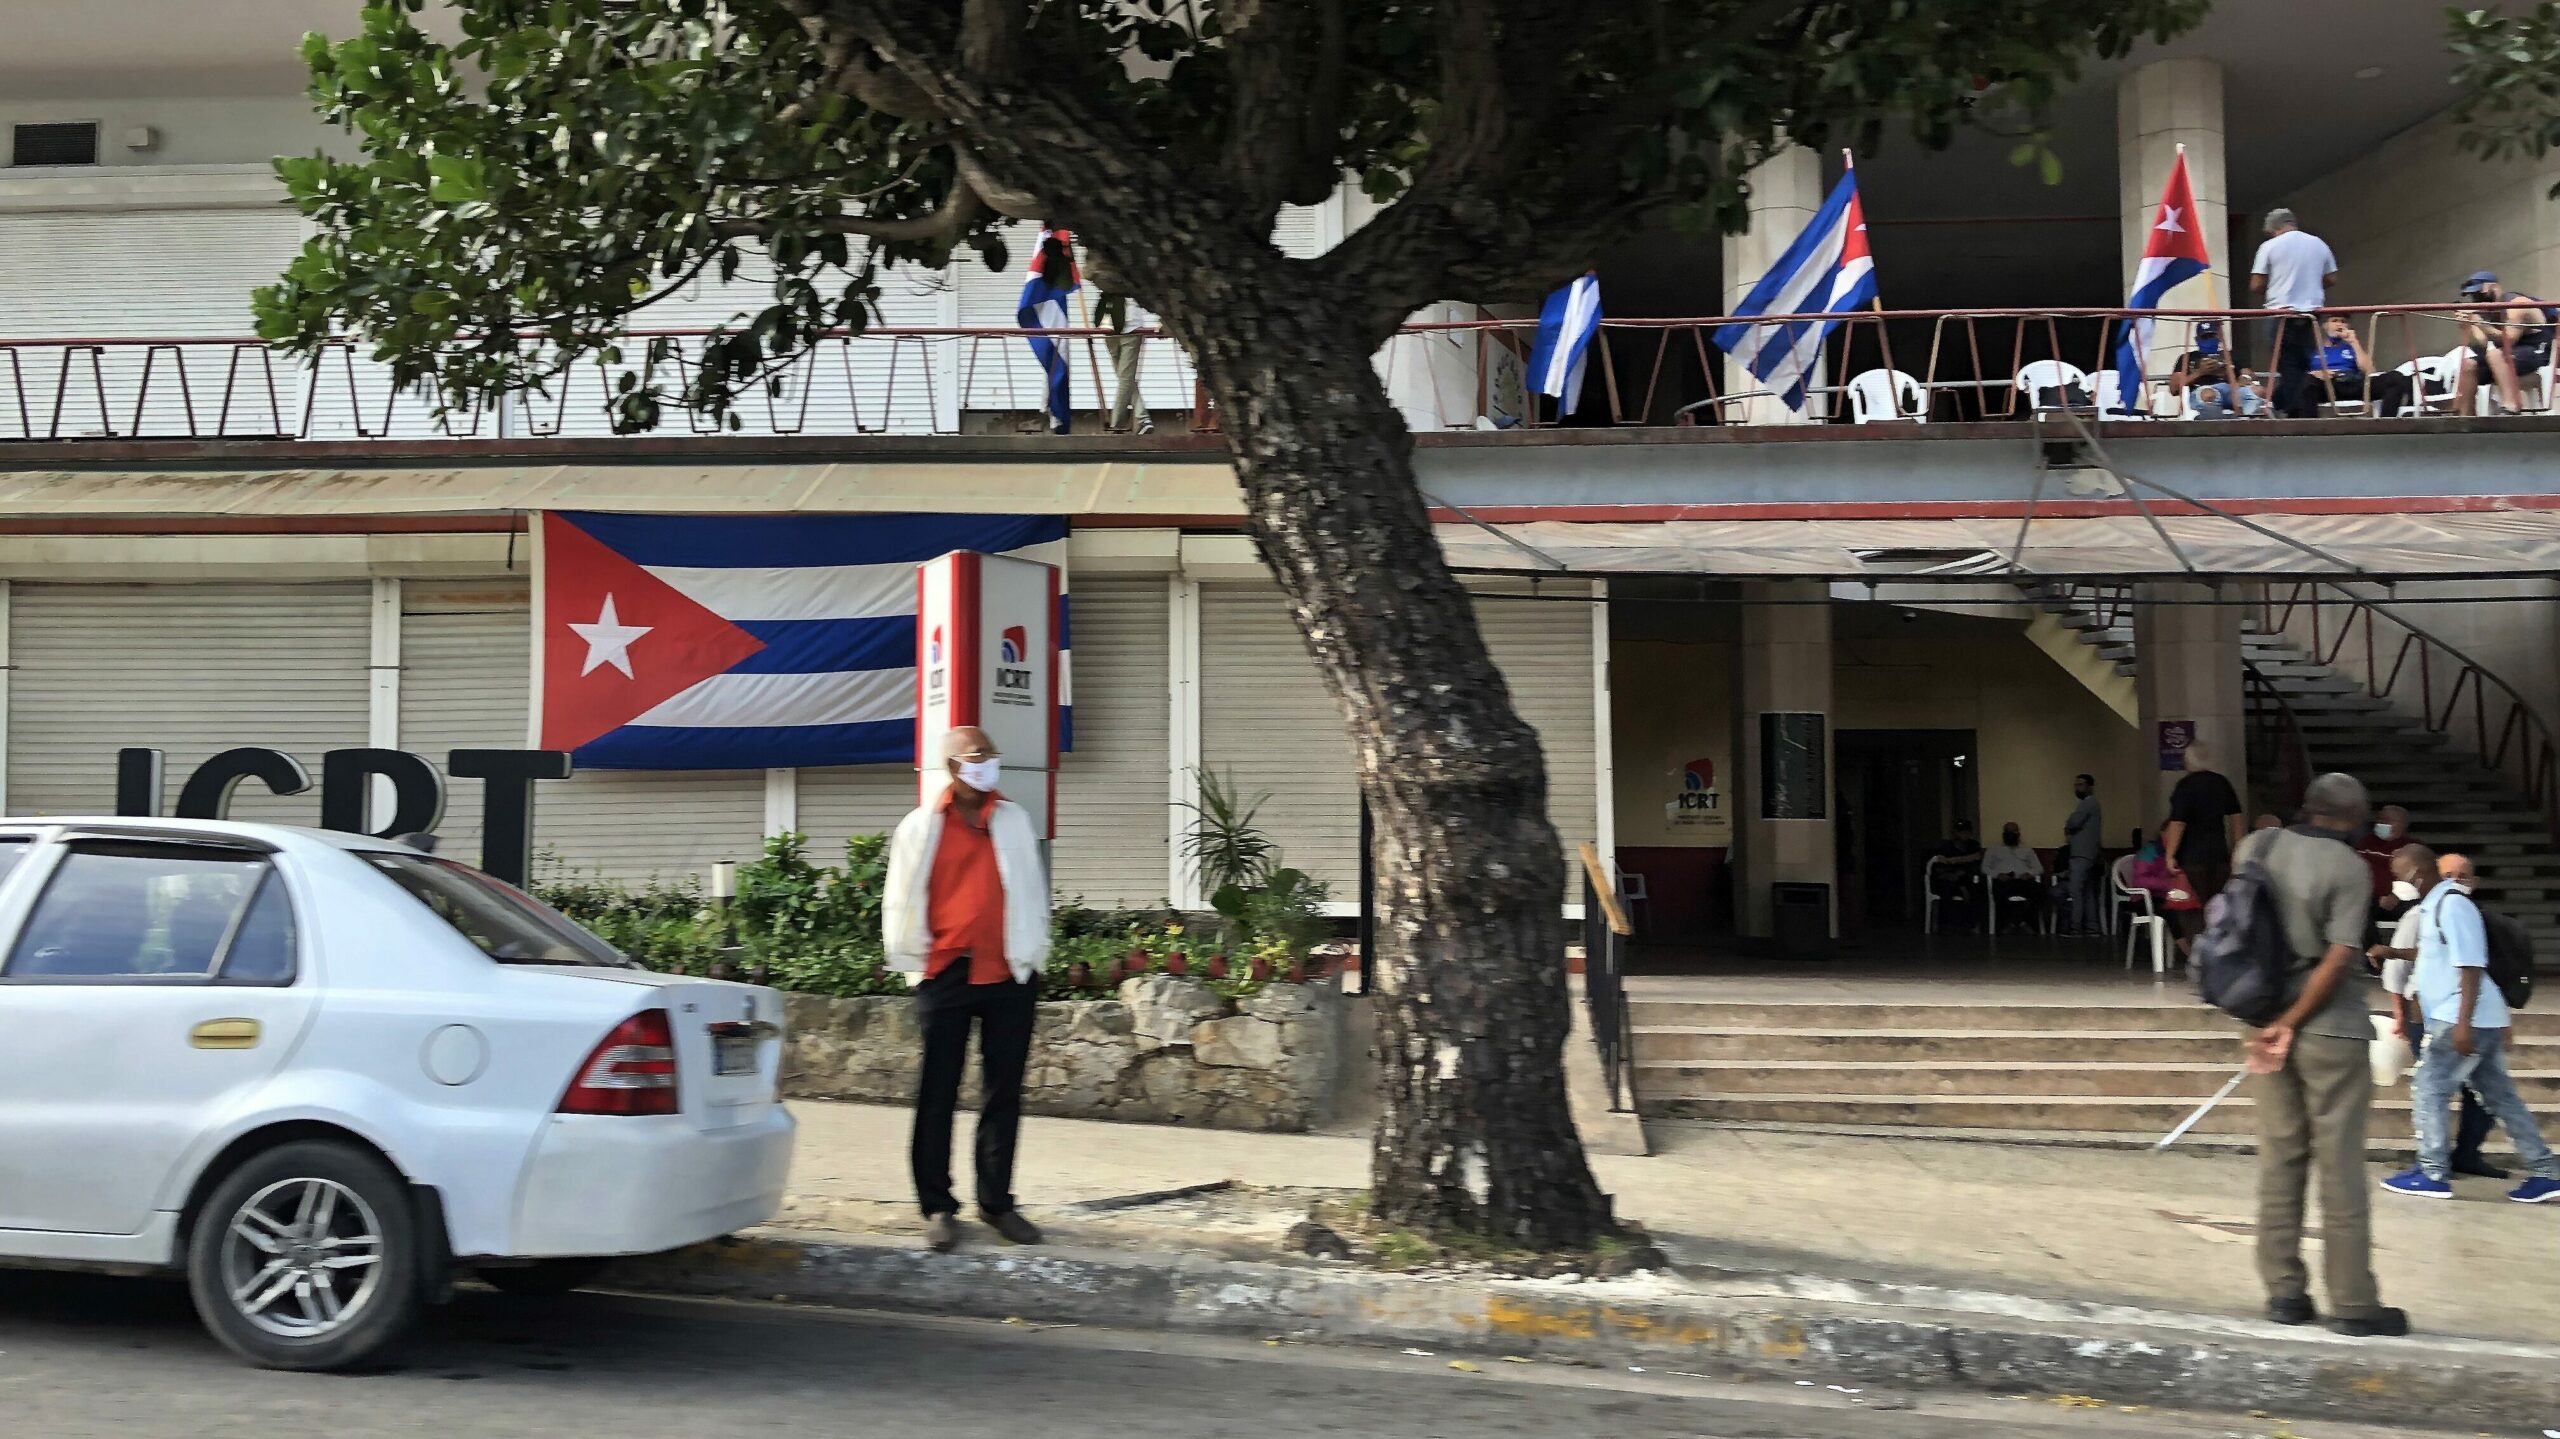 Varias personas son vistas junto a banderas en la Avenida 23, en La Habana (Cuba). EFE